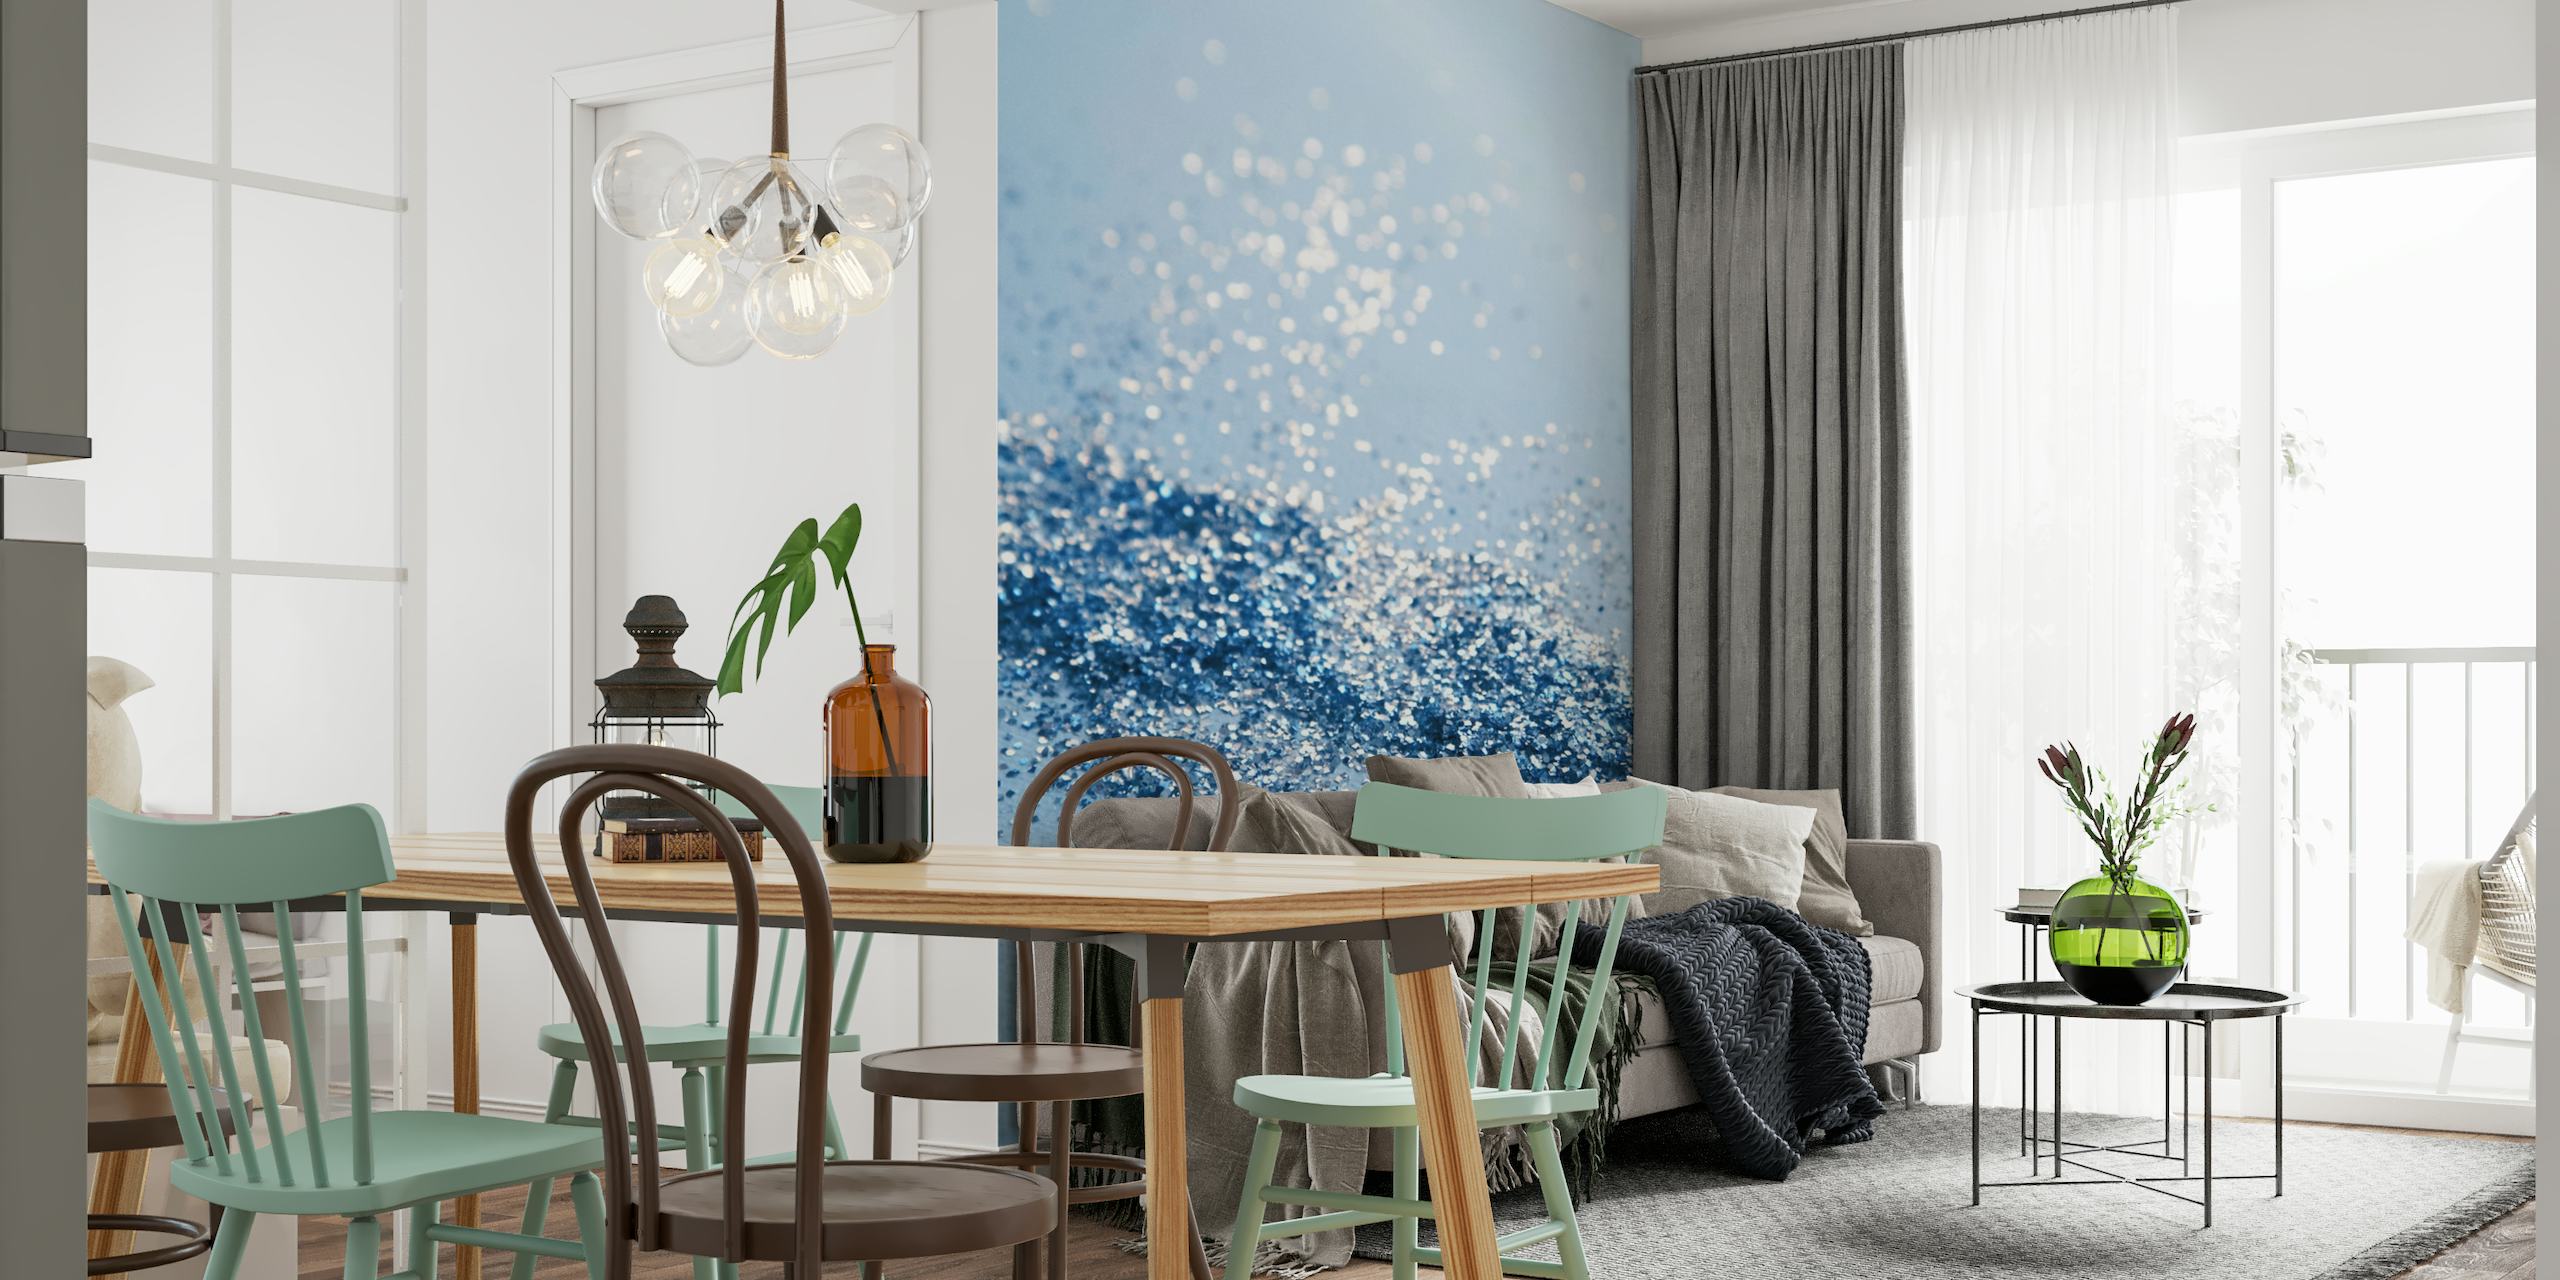 Fotomural vinílico de parede com textura azul brilhante para decoração sofisticada